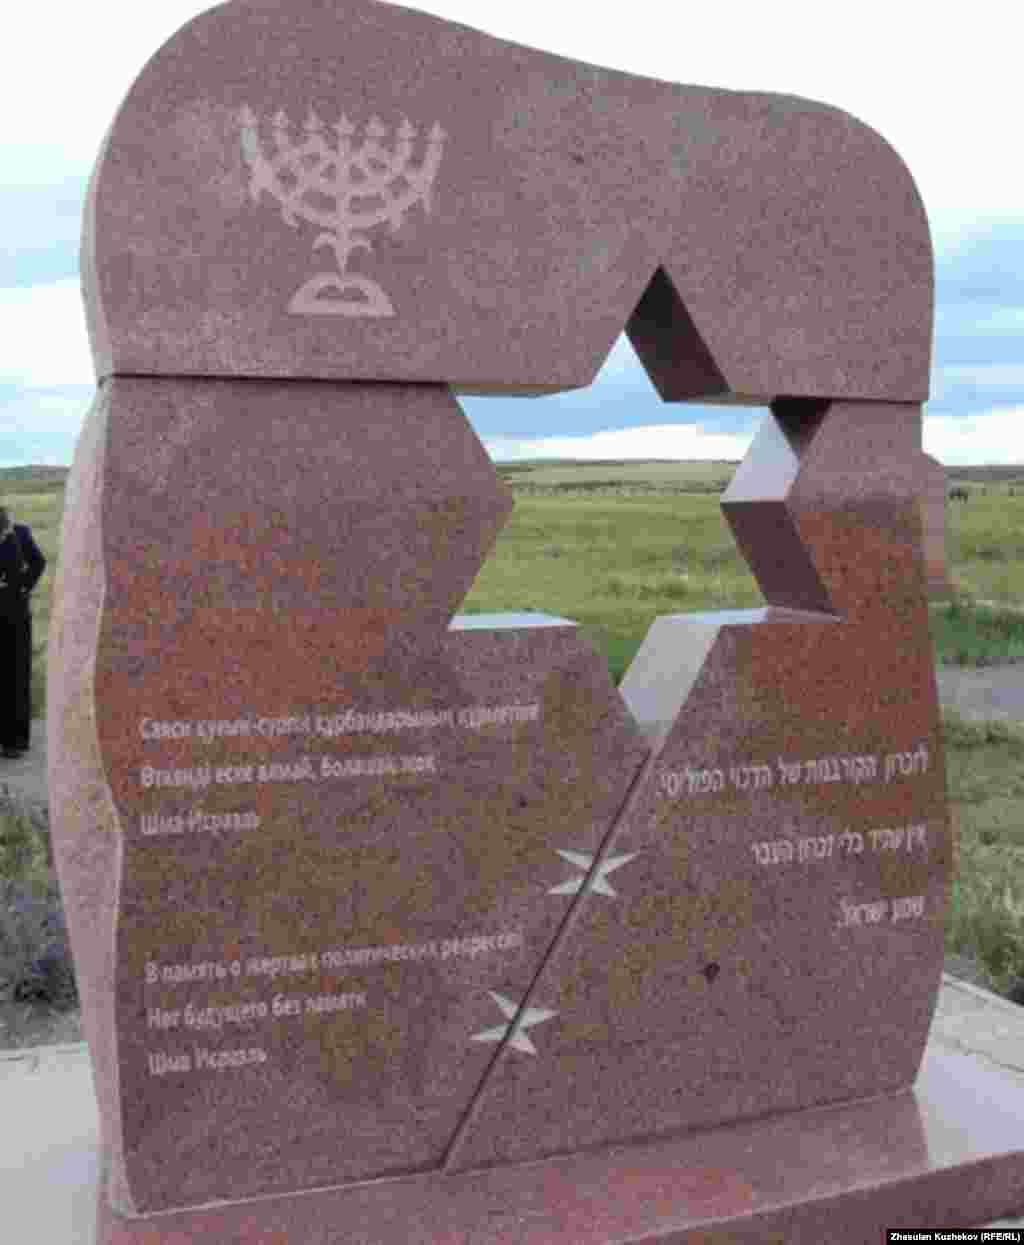 Памятник погибшим евреям на Спасском кладбище. Карагандинская область, 31 мая 2011 года. - Памятник погибшим евреям на Спасском кладбище. Карагандинская область, 31 мая 2011 года. 